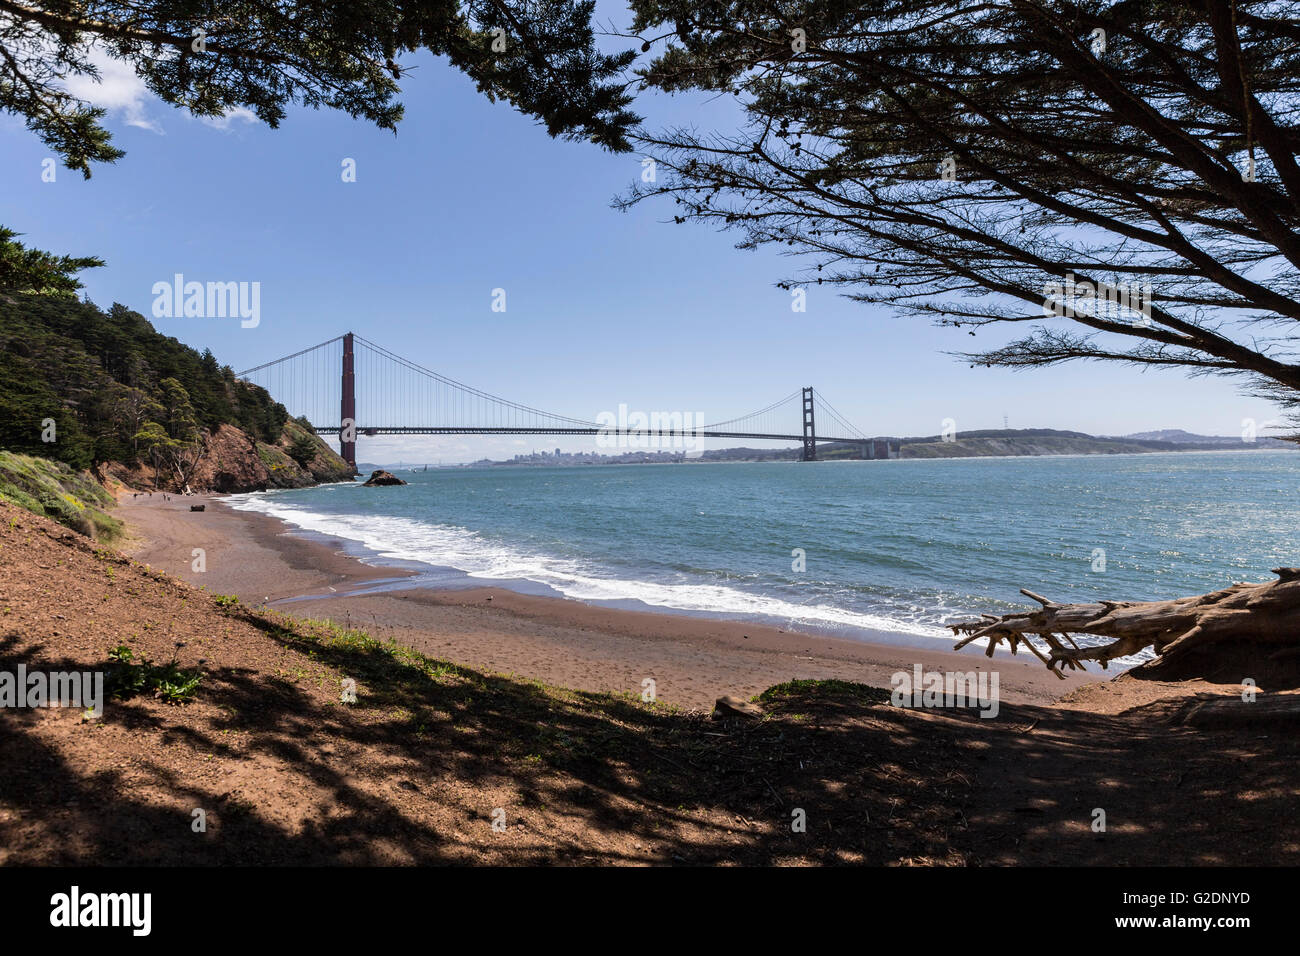 Golden Gate Recreation Area Brücke anzeigen Marin Headlands Strandbucht. Stockfoto